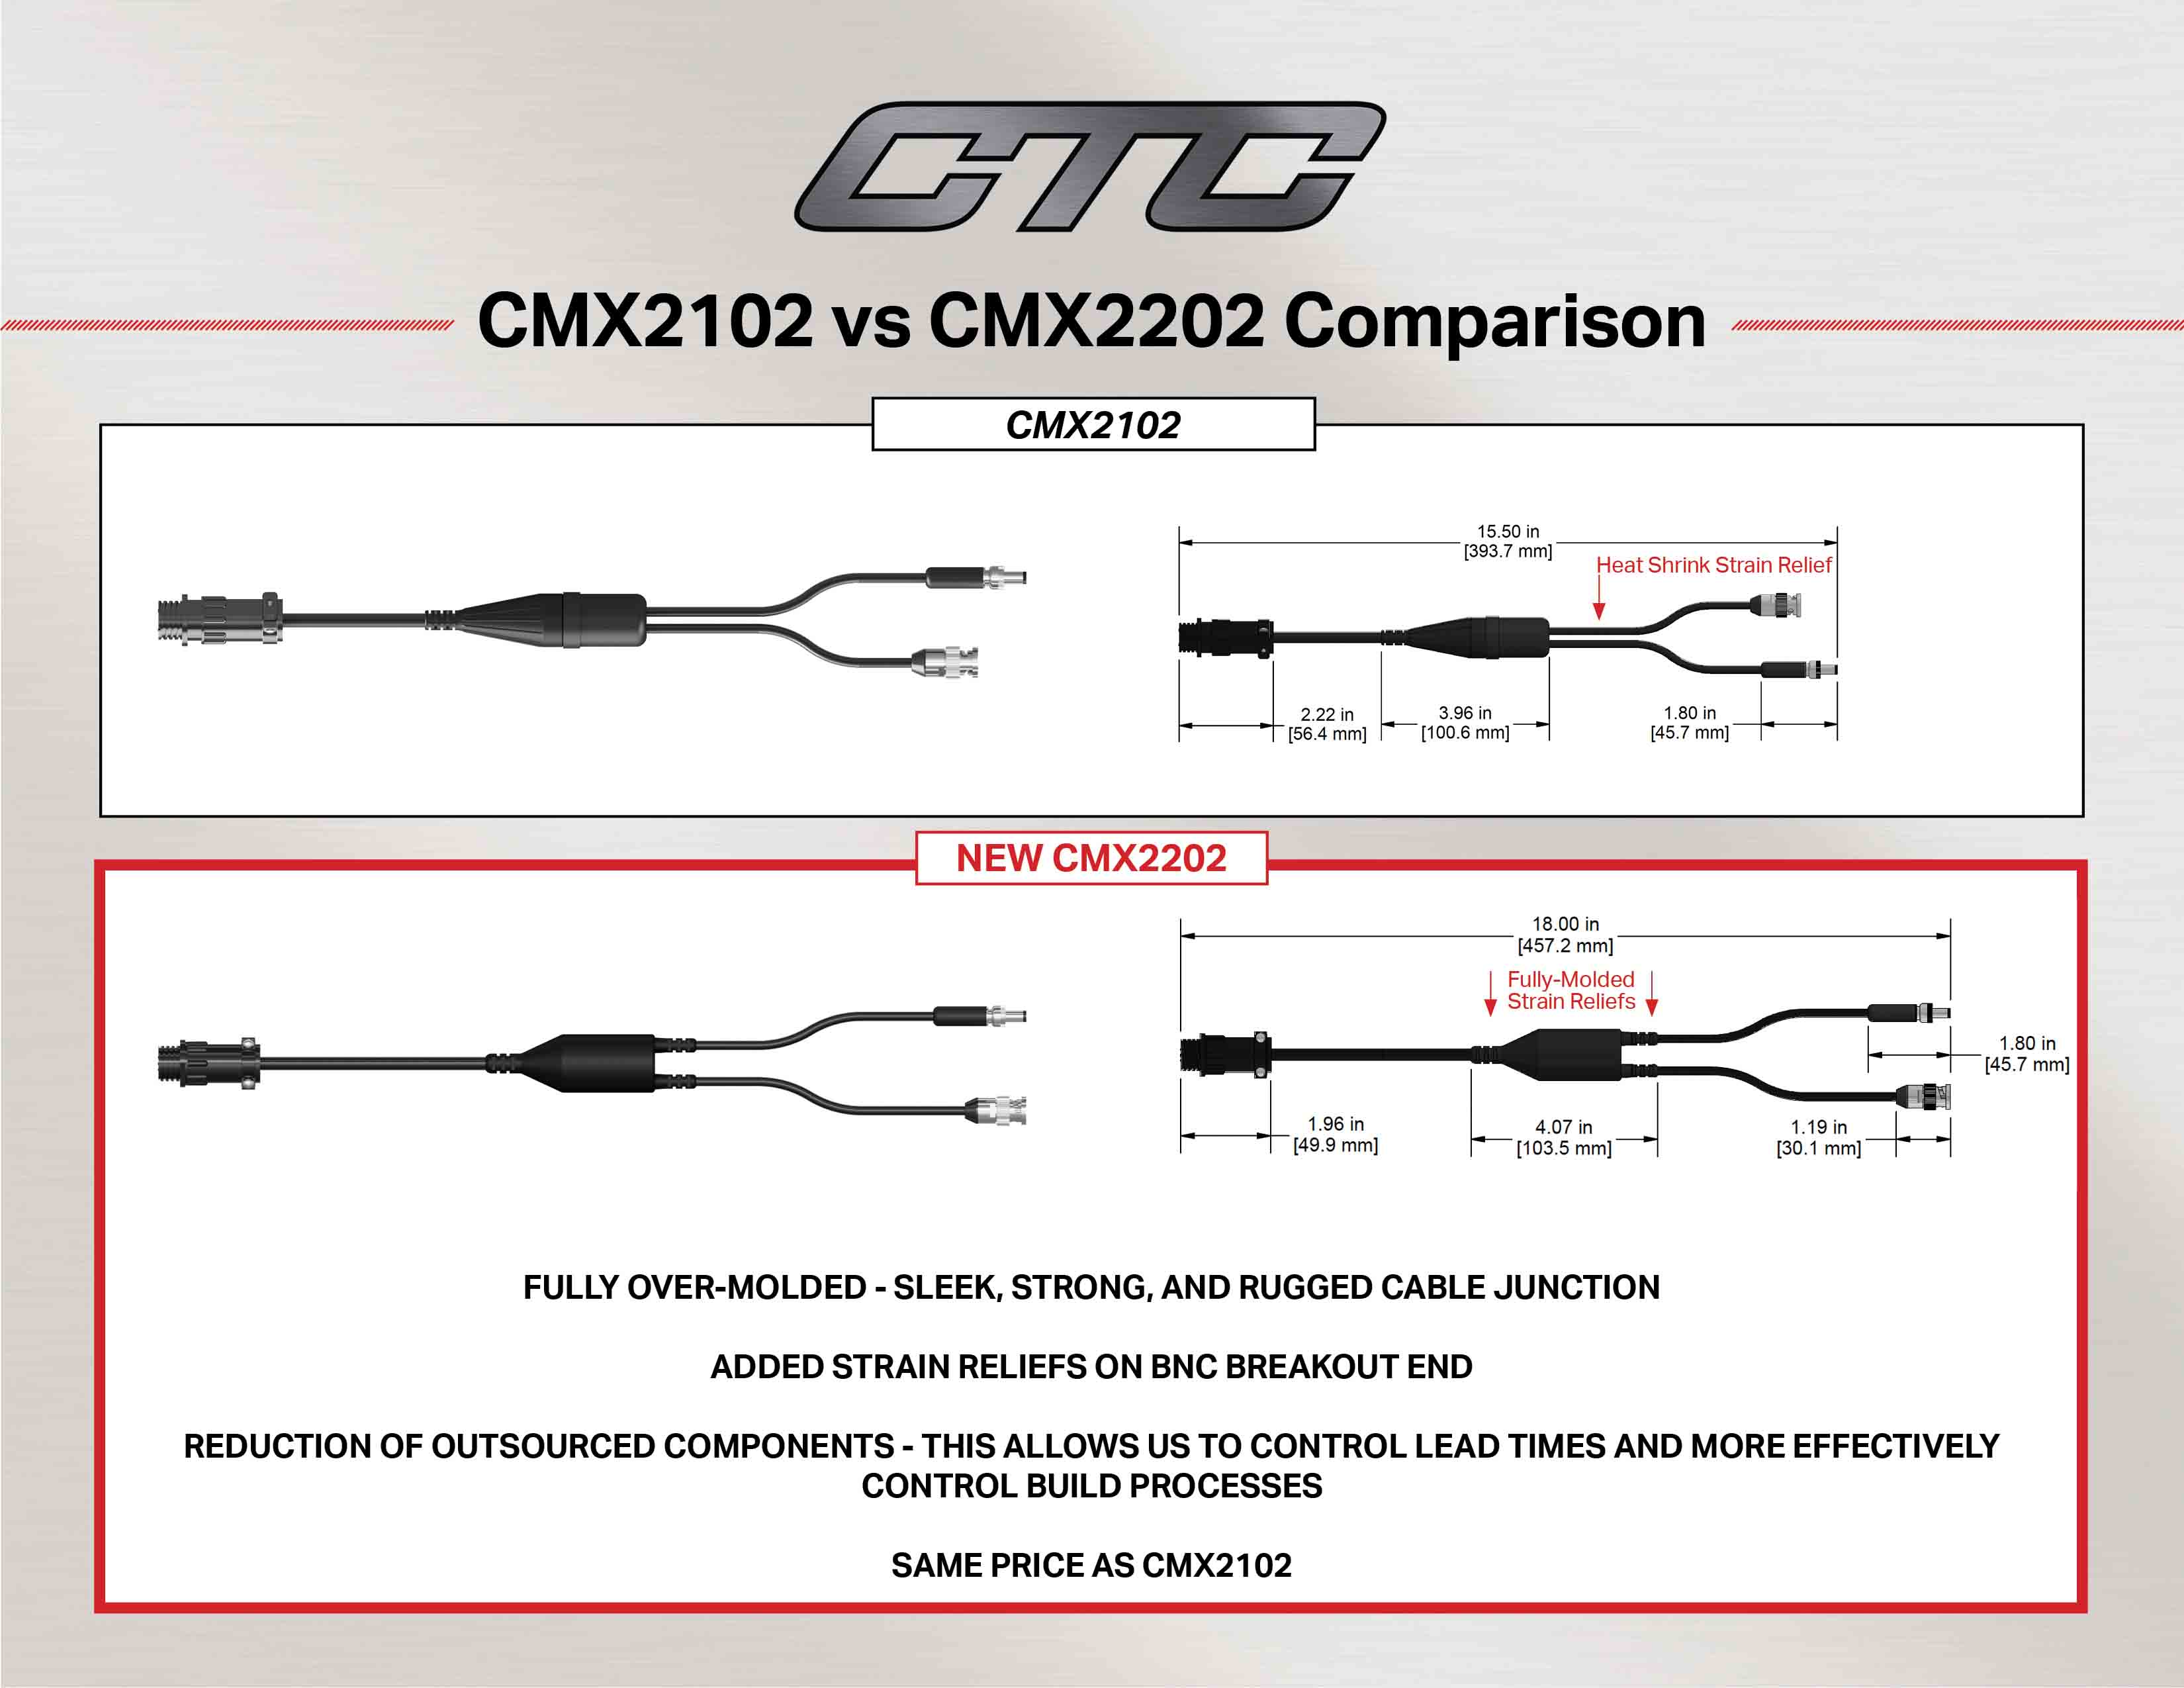 CMX2102 vs CMX2202 cable comparison diagram and measurements